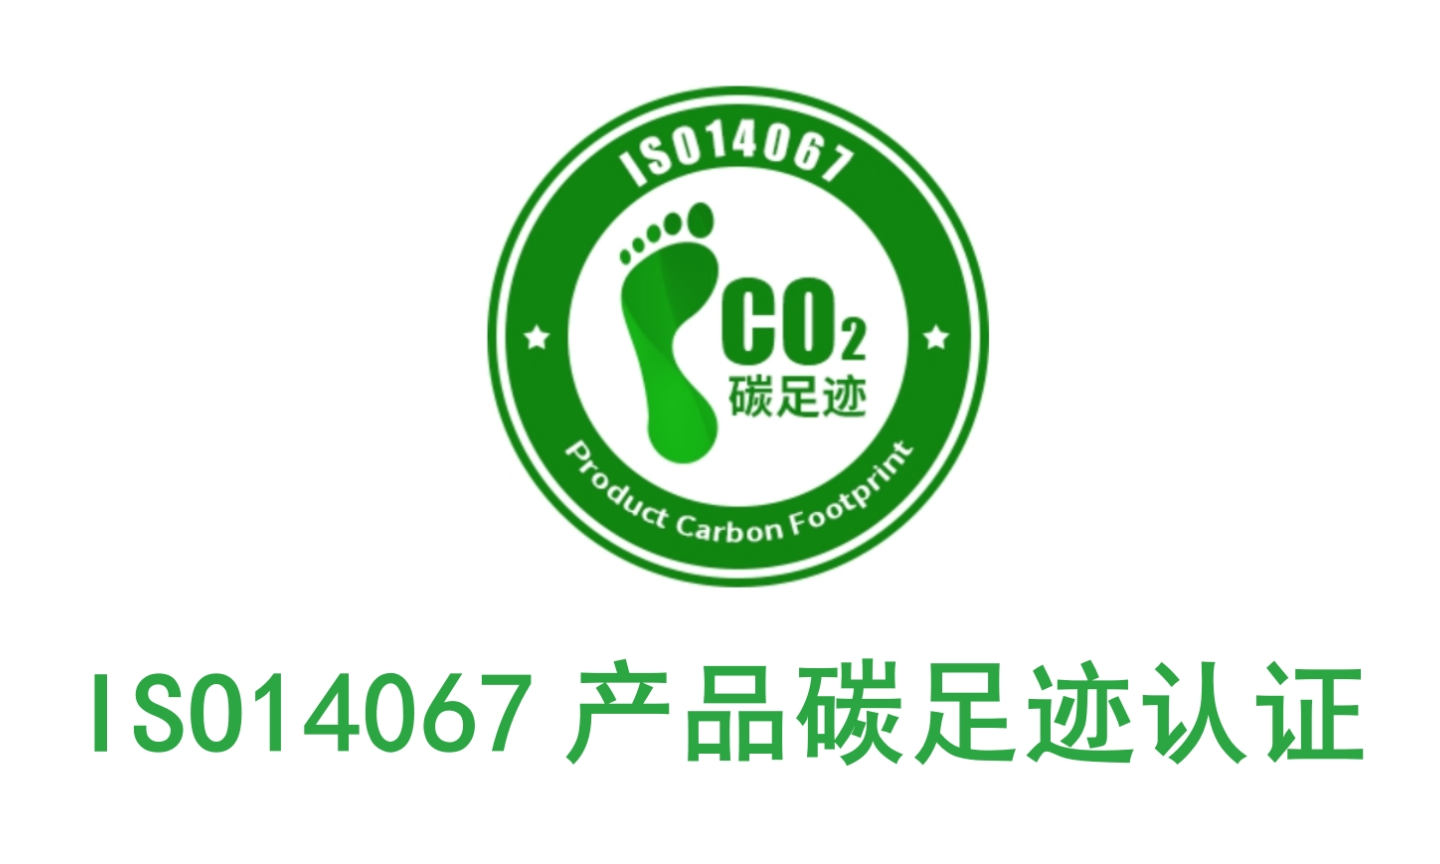 江门负责办理碳足迹认证的公司,碳足迹认证